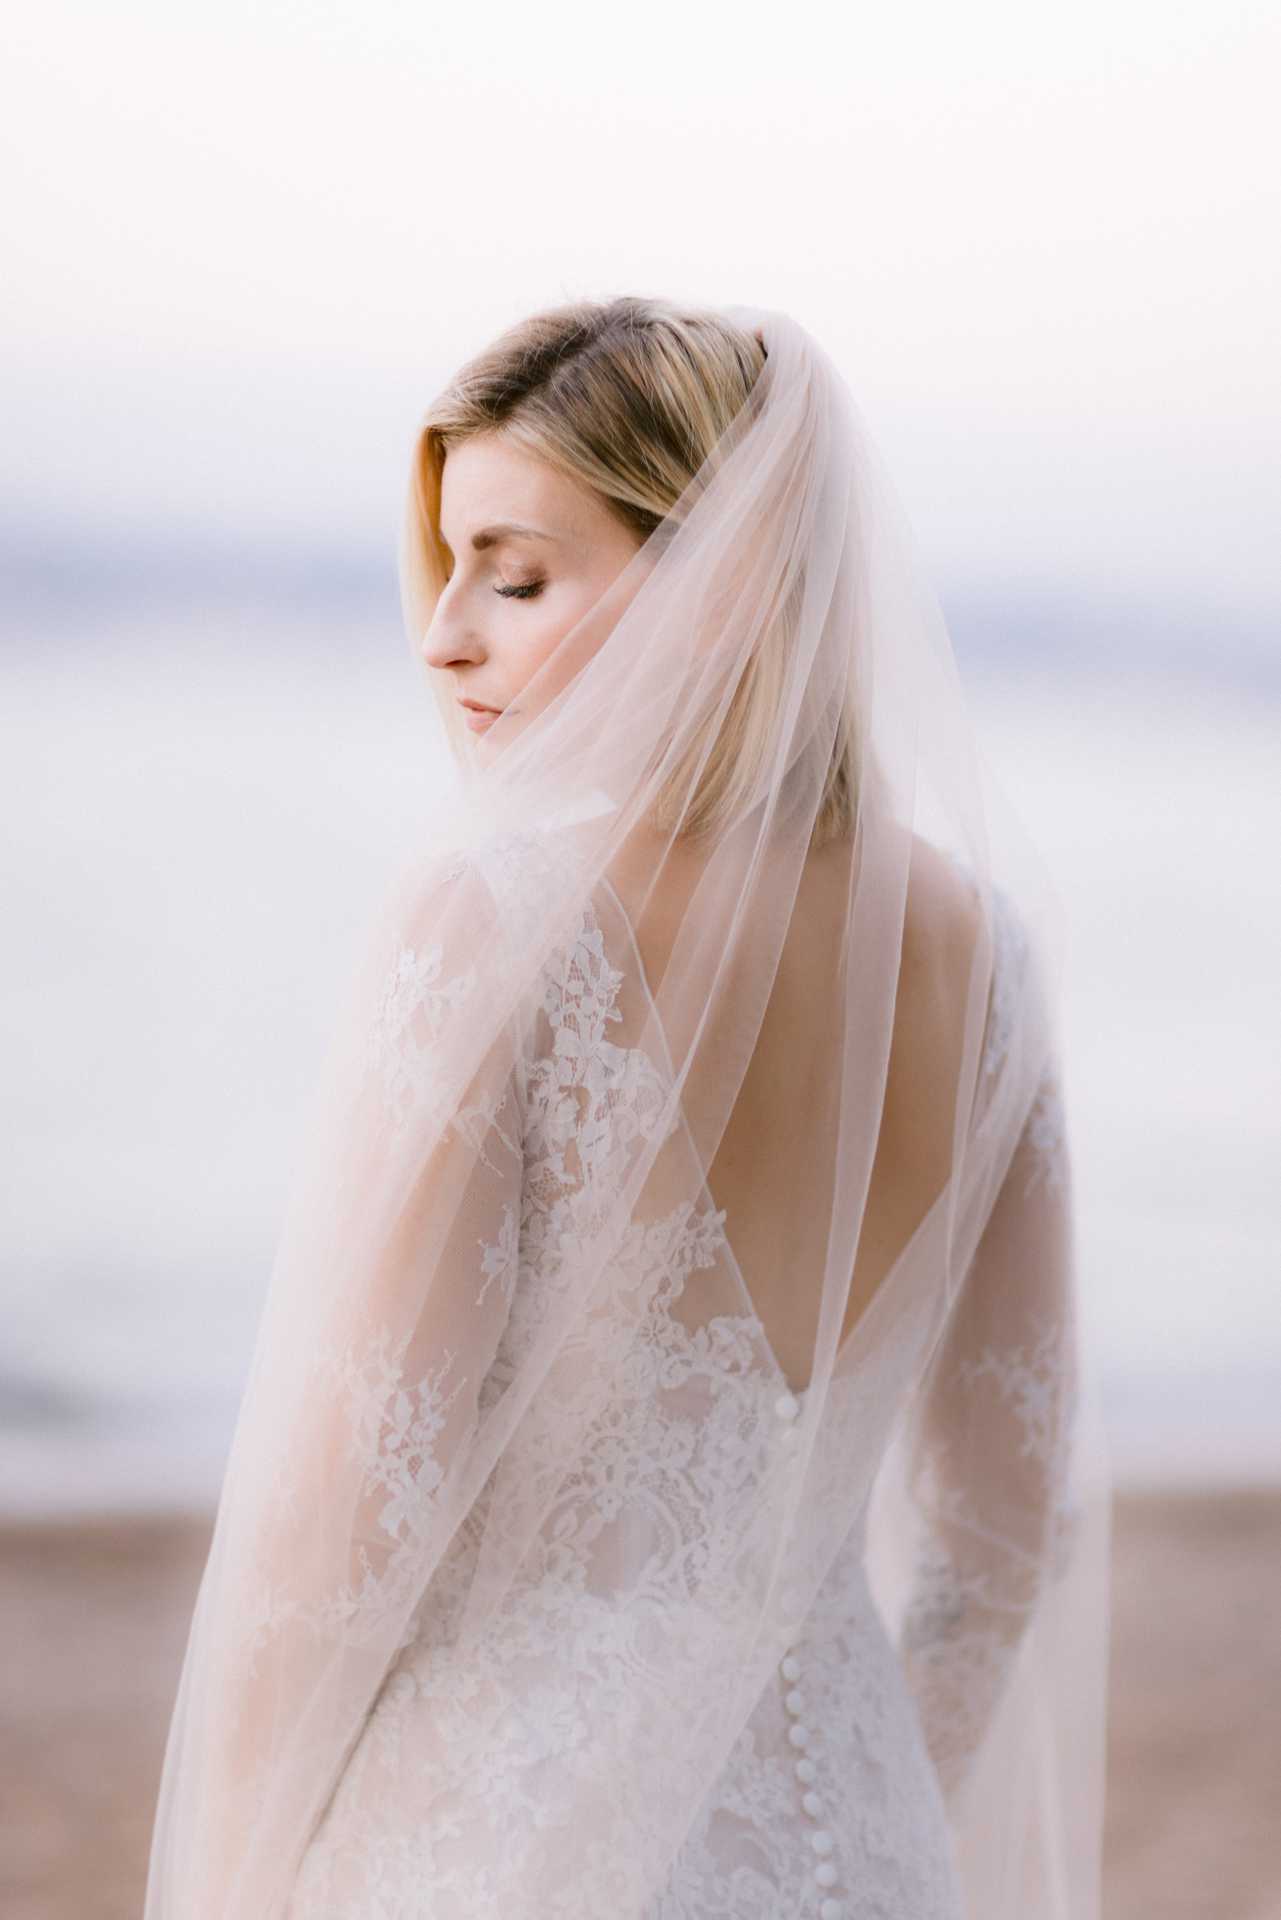 robe de mariee nice cannes cote d'azur par terence baelen photographe mariage à cannes